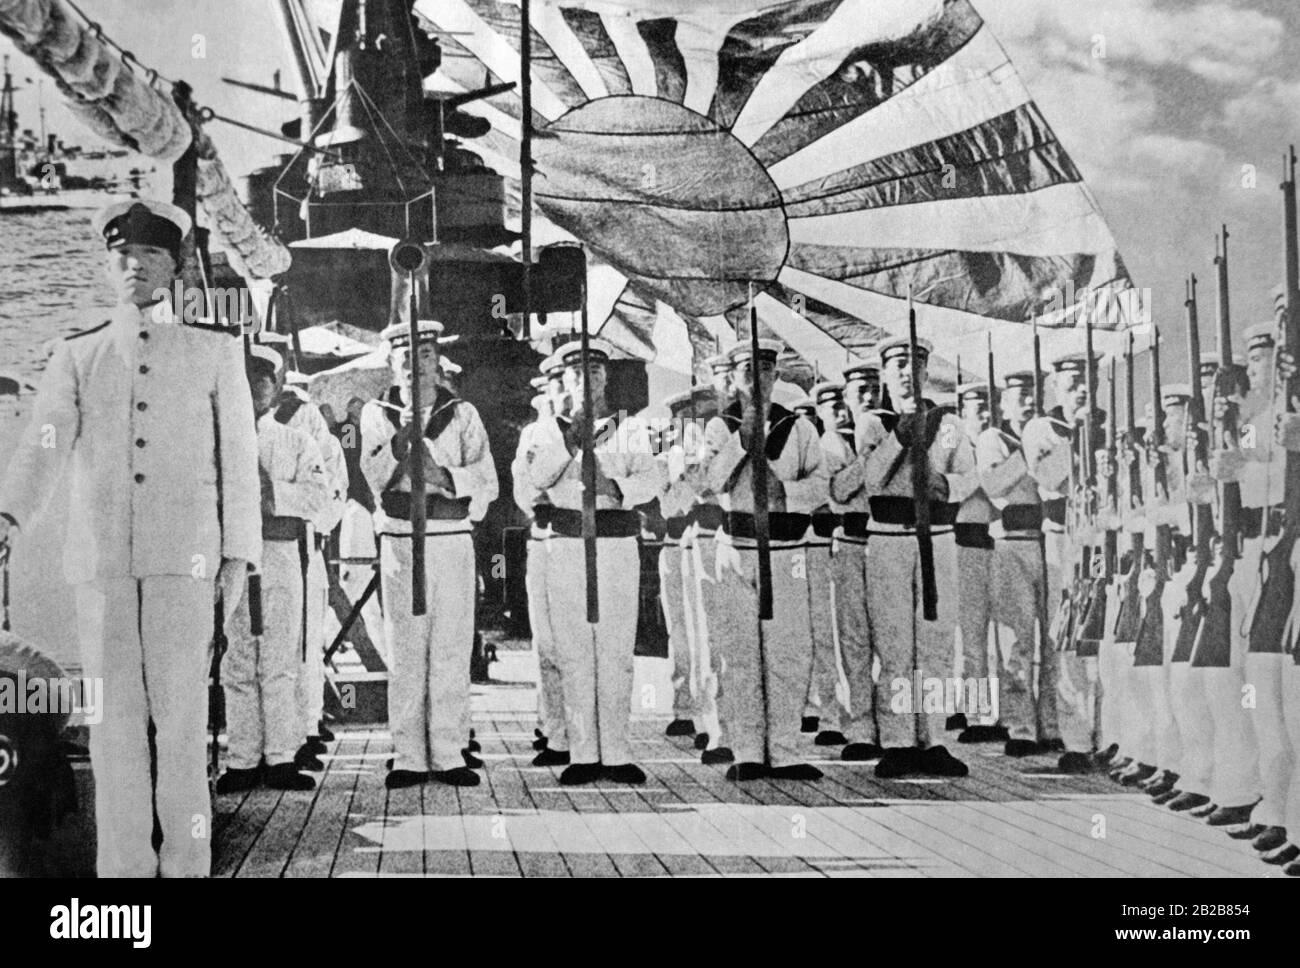 L'équipage d'un navire de la Marine impériale japonaise s'est aligné sur la terrasse. En arrière-plan, un grand drapeau de la Marine est en agitant. (Photo non datée, environ 1920) Banque D'Images